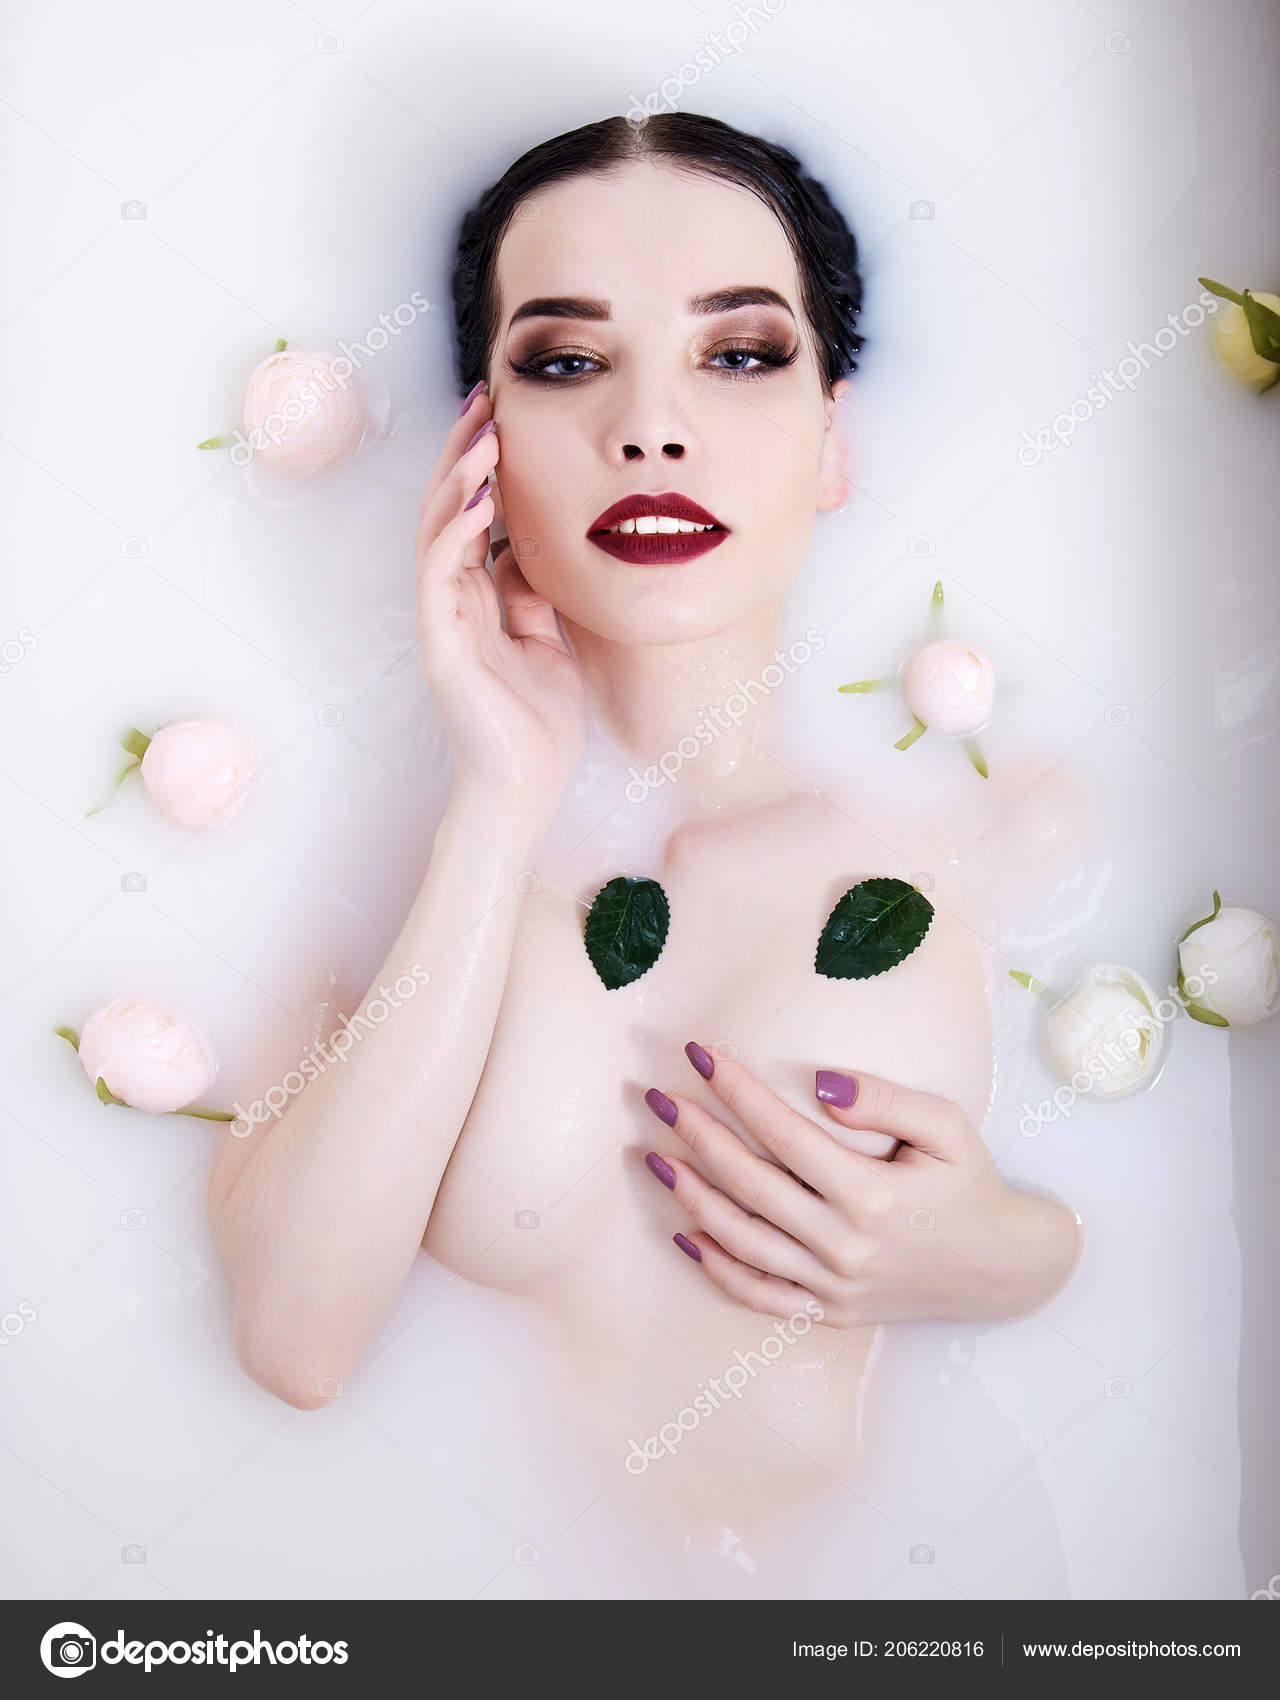 Nude girl in milk bath